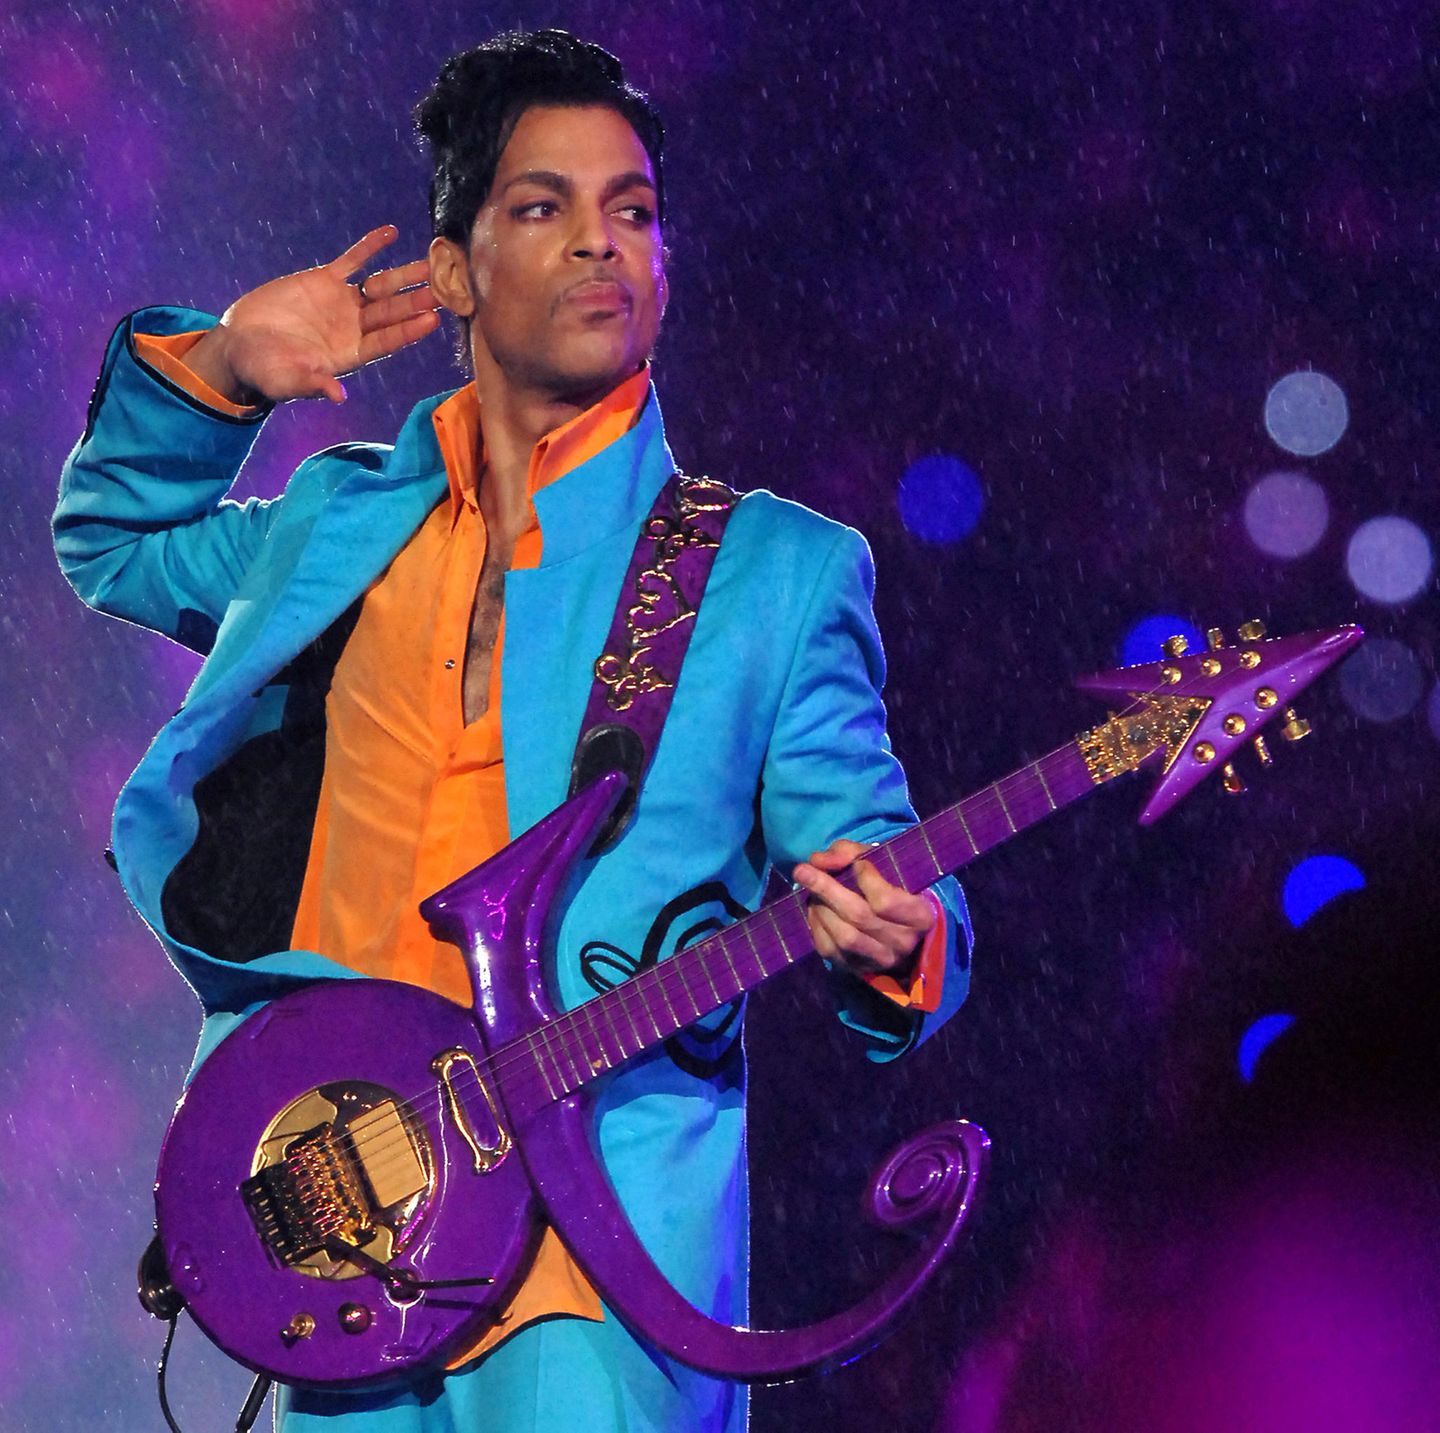 2007   Der legendäre Prince († 2016) begeistert das Super-Bowl-Publikum im Dolphins Stadion in Miami, Florida mit azurblau-orangefarbener Anzug-Kombi und seiner unverkennbaren Gitarre.